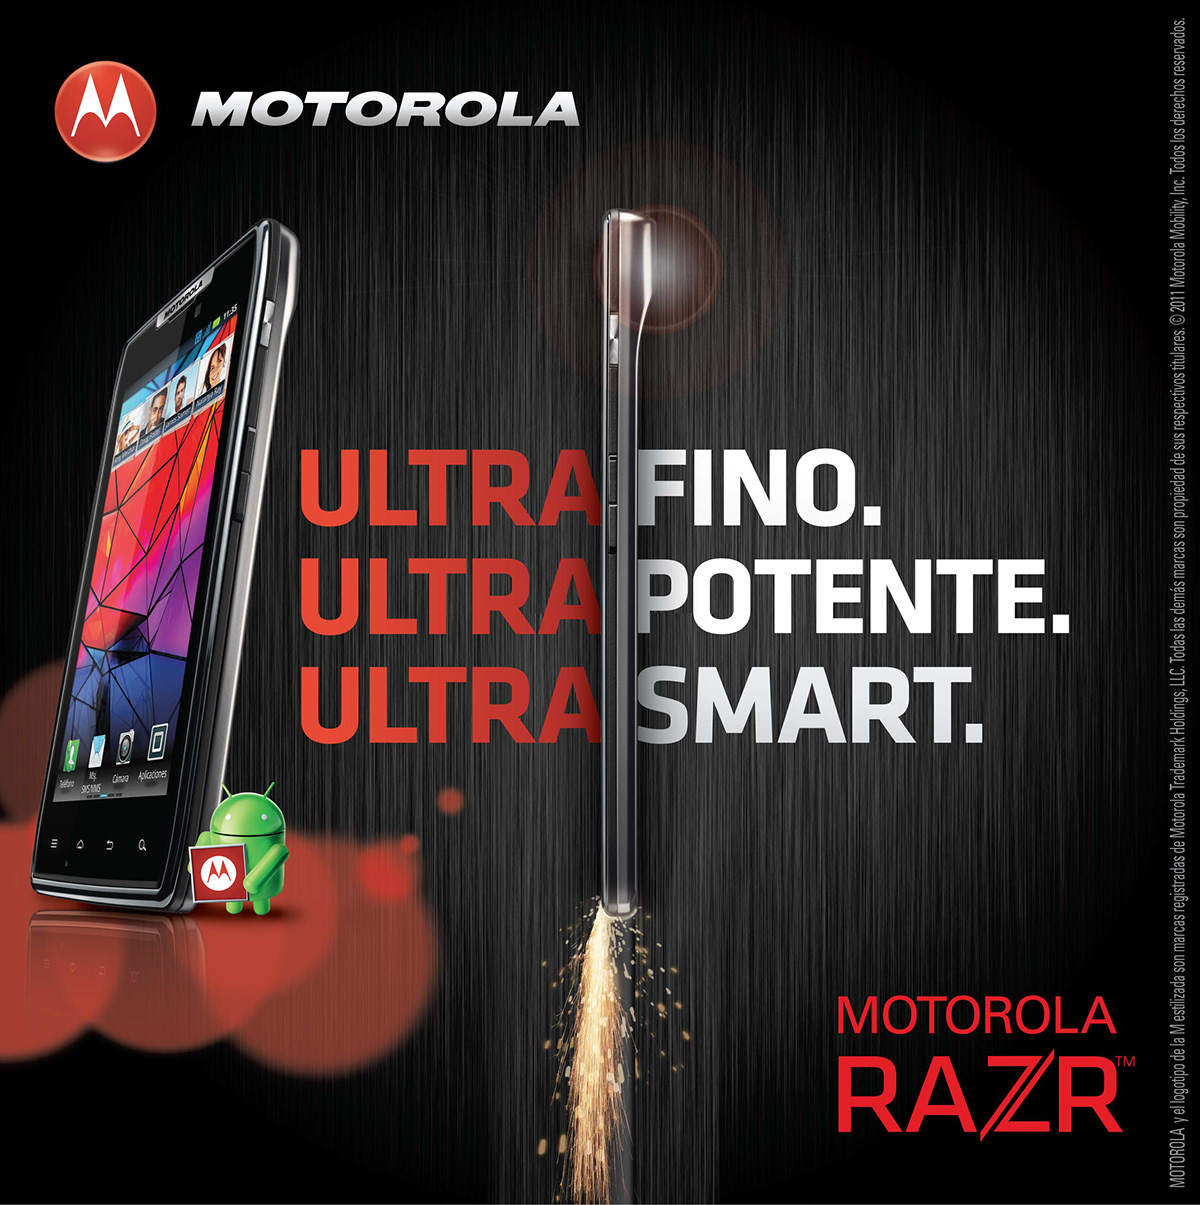 motorola Razr Campaña Via Publica key visual android